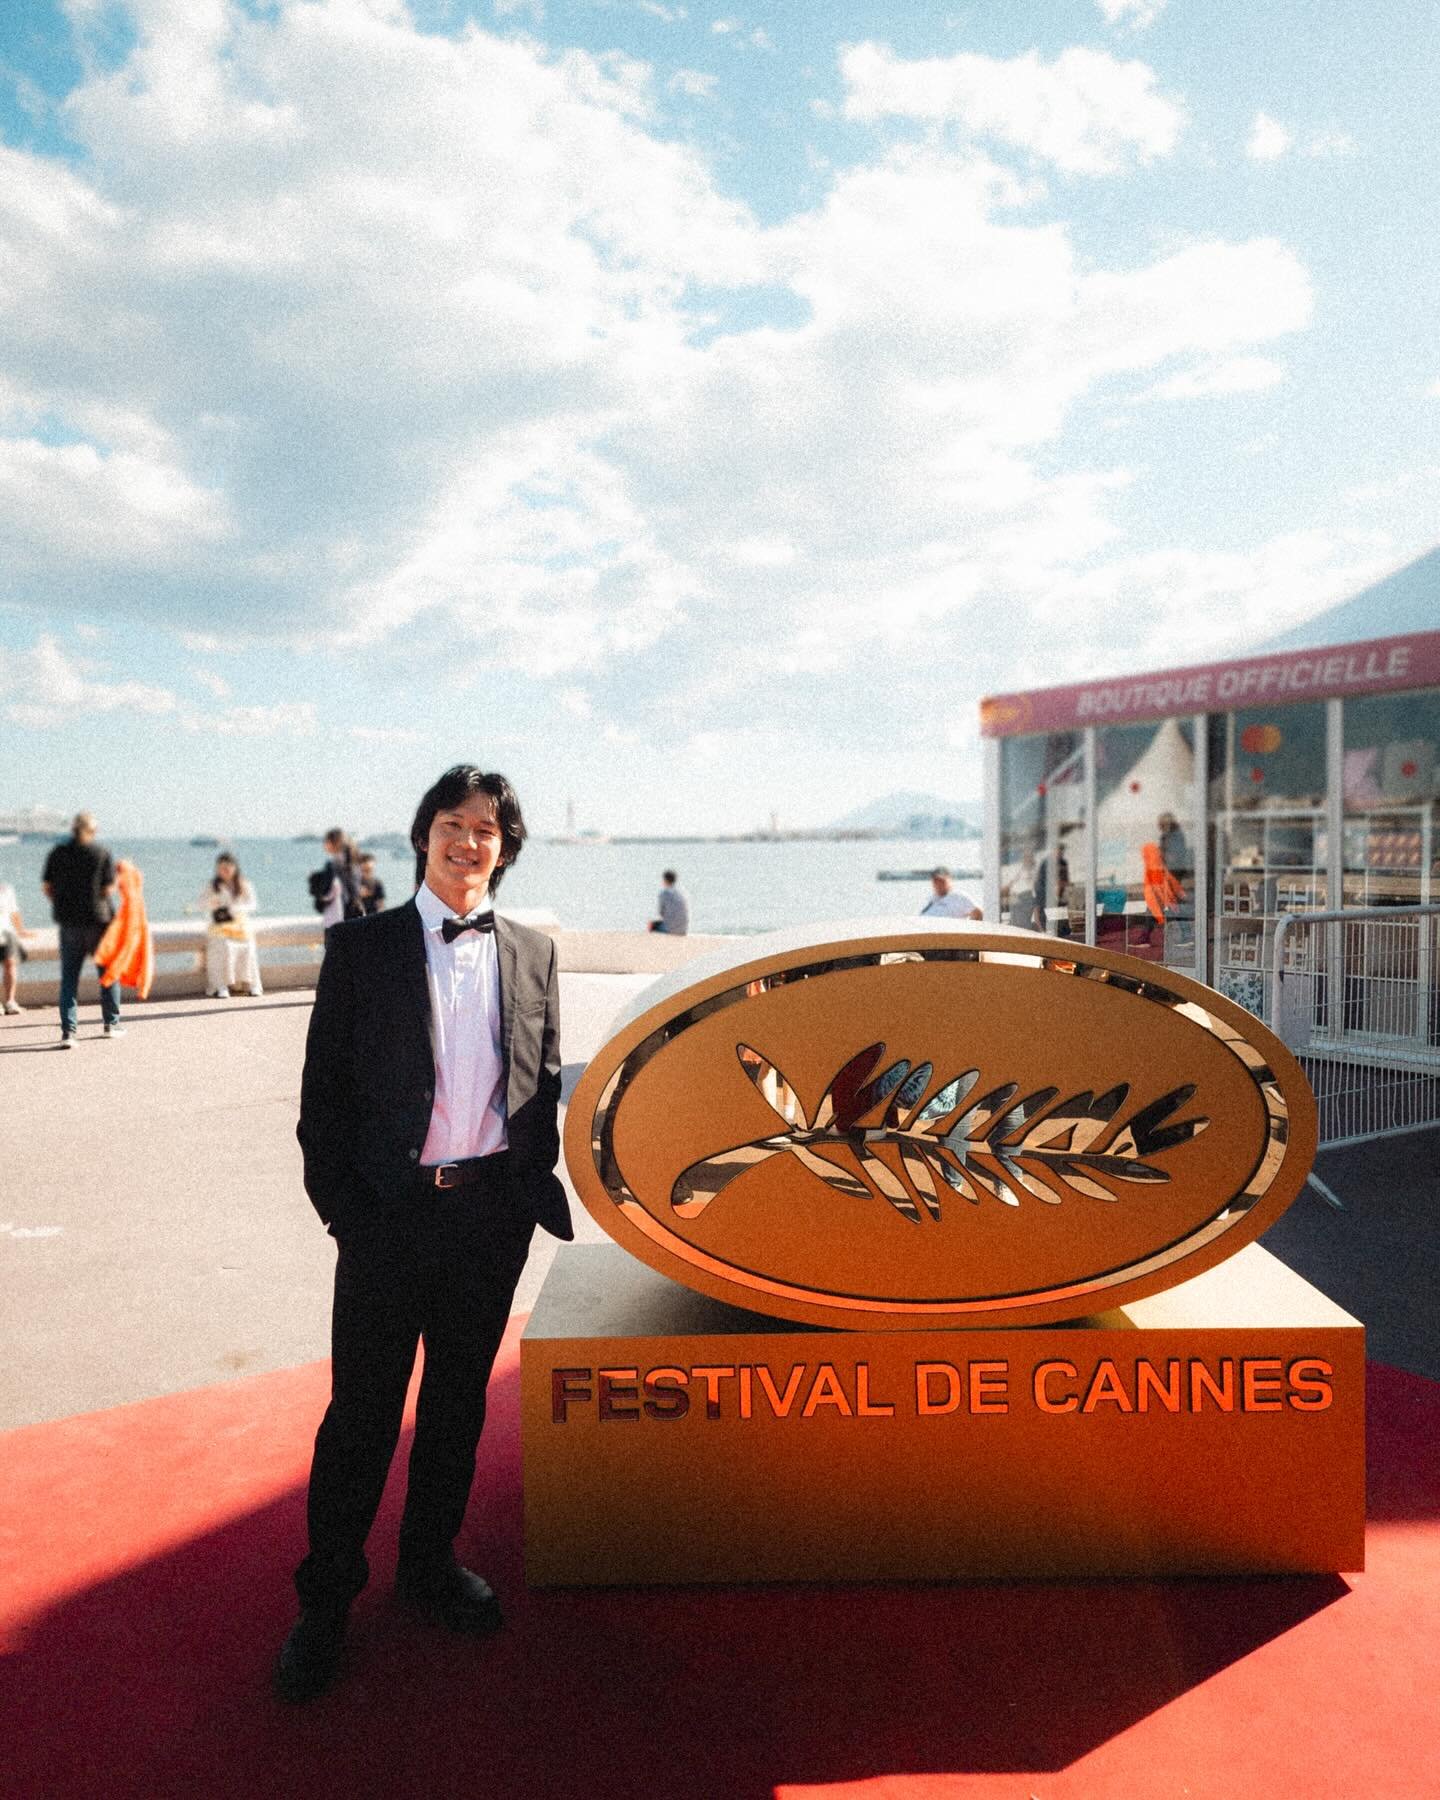 Festival de Cannes ✨

C&rsquo;&eacute;tait vraiment incroyable ! Je tiens &agrave; remercier @maregionsud de m&rsquo;avoir invit&eacute; &agrave; monter les fameuses marches du festival de Cannes et d&rsquo;avoir pu assister au film &ldquo;Bird&rdquo